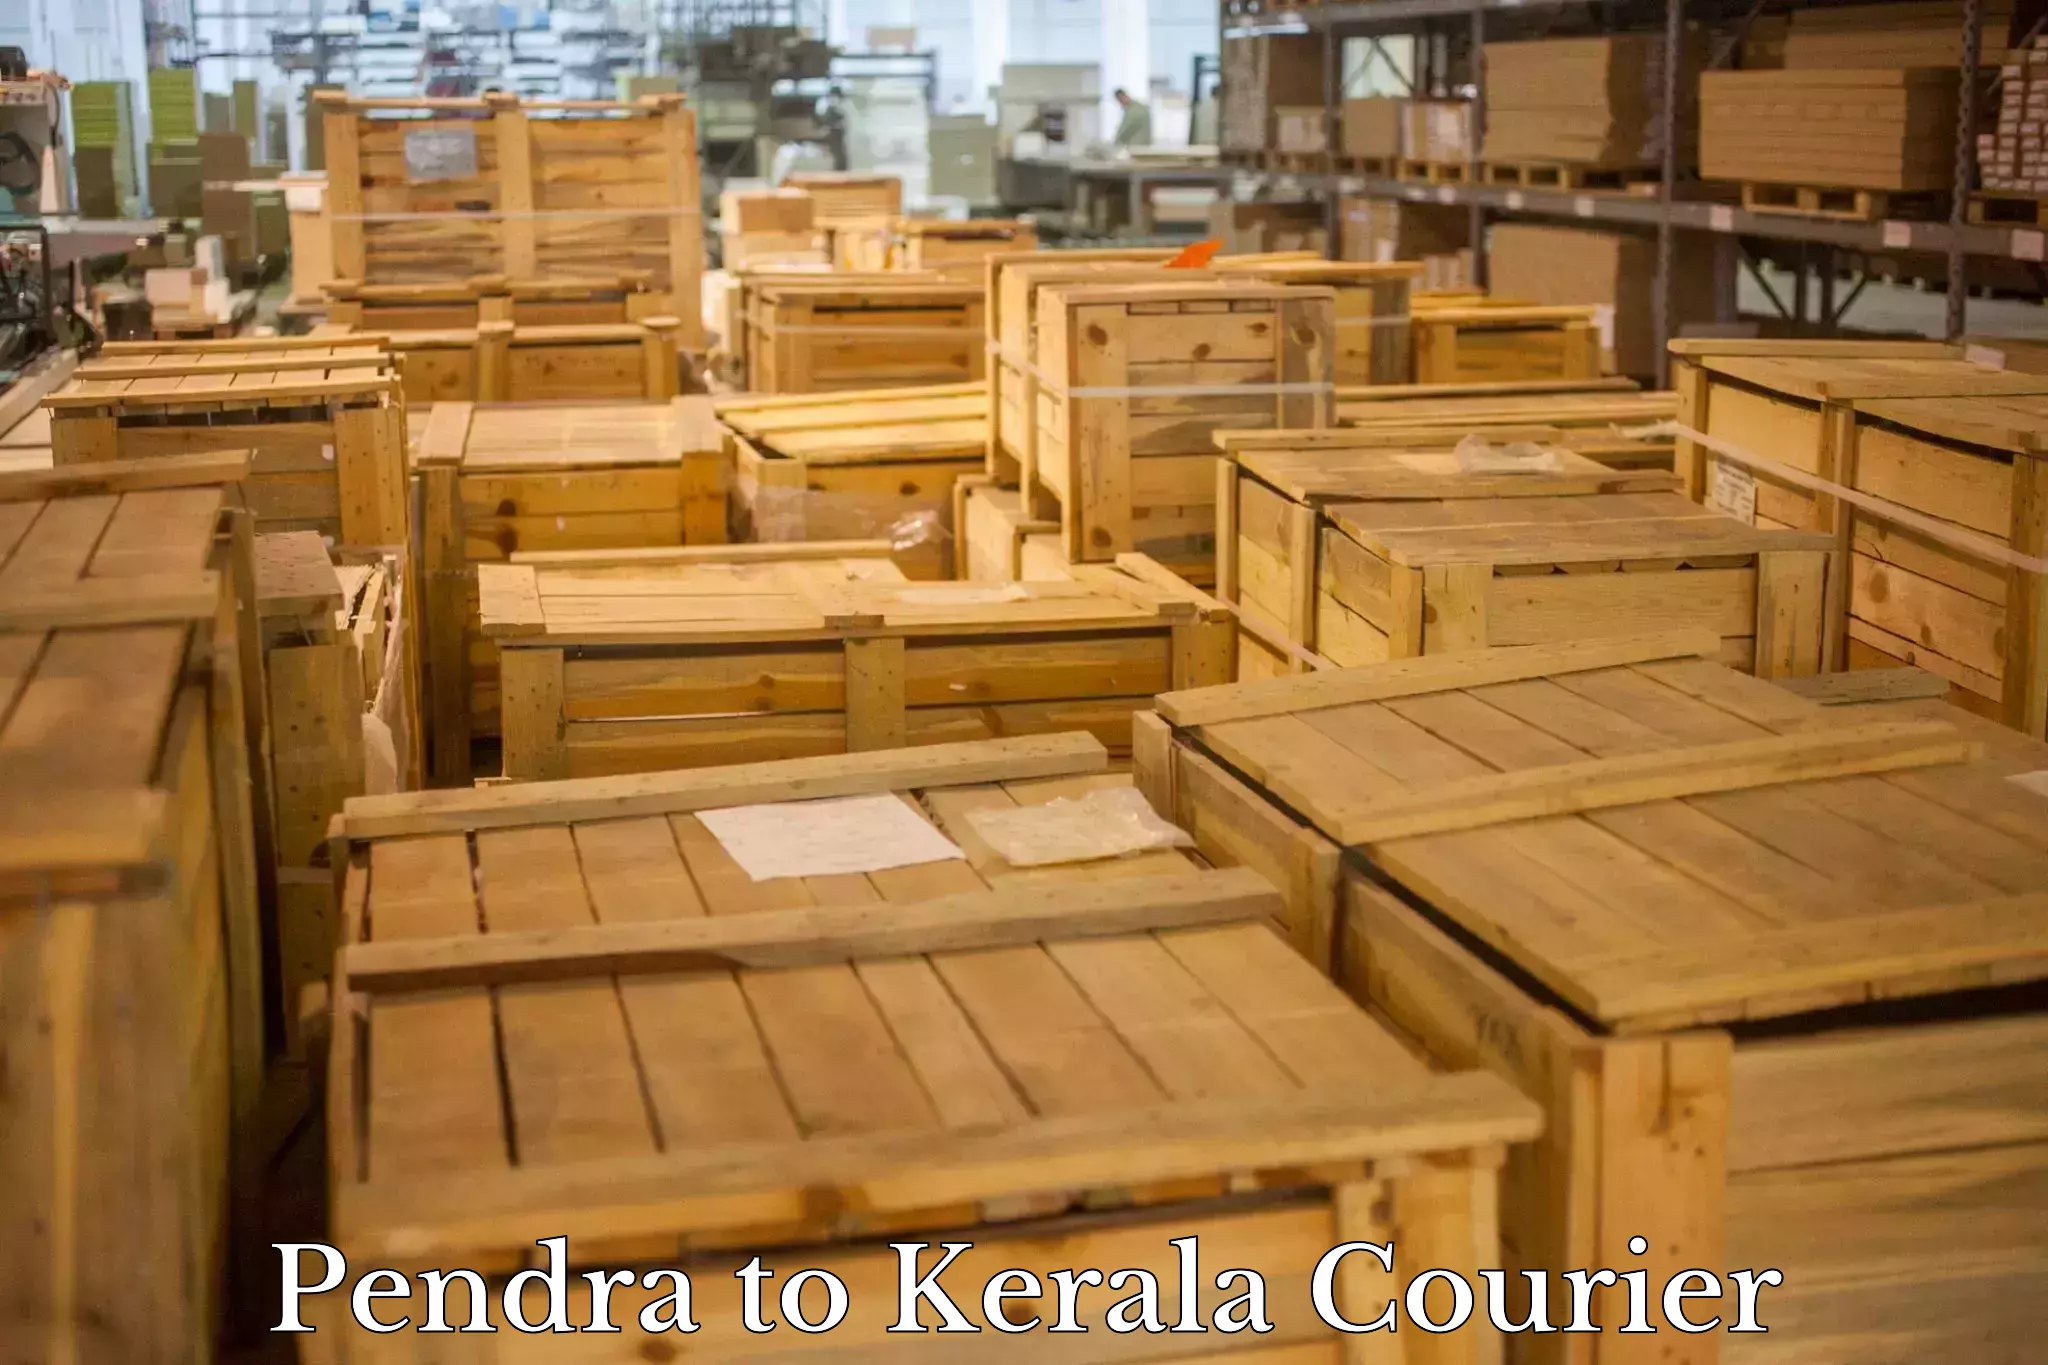 Multi-city courier Pendra to Cochin Port Kochi